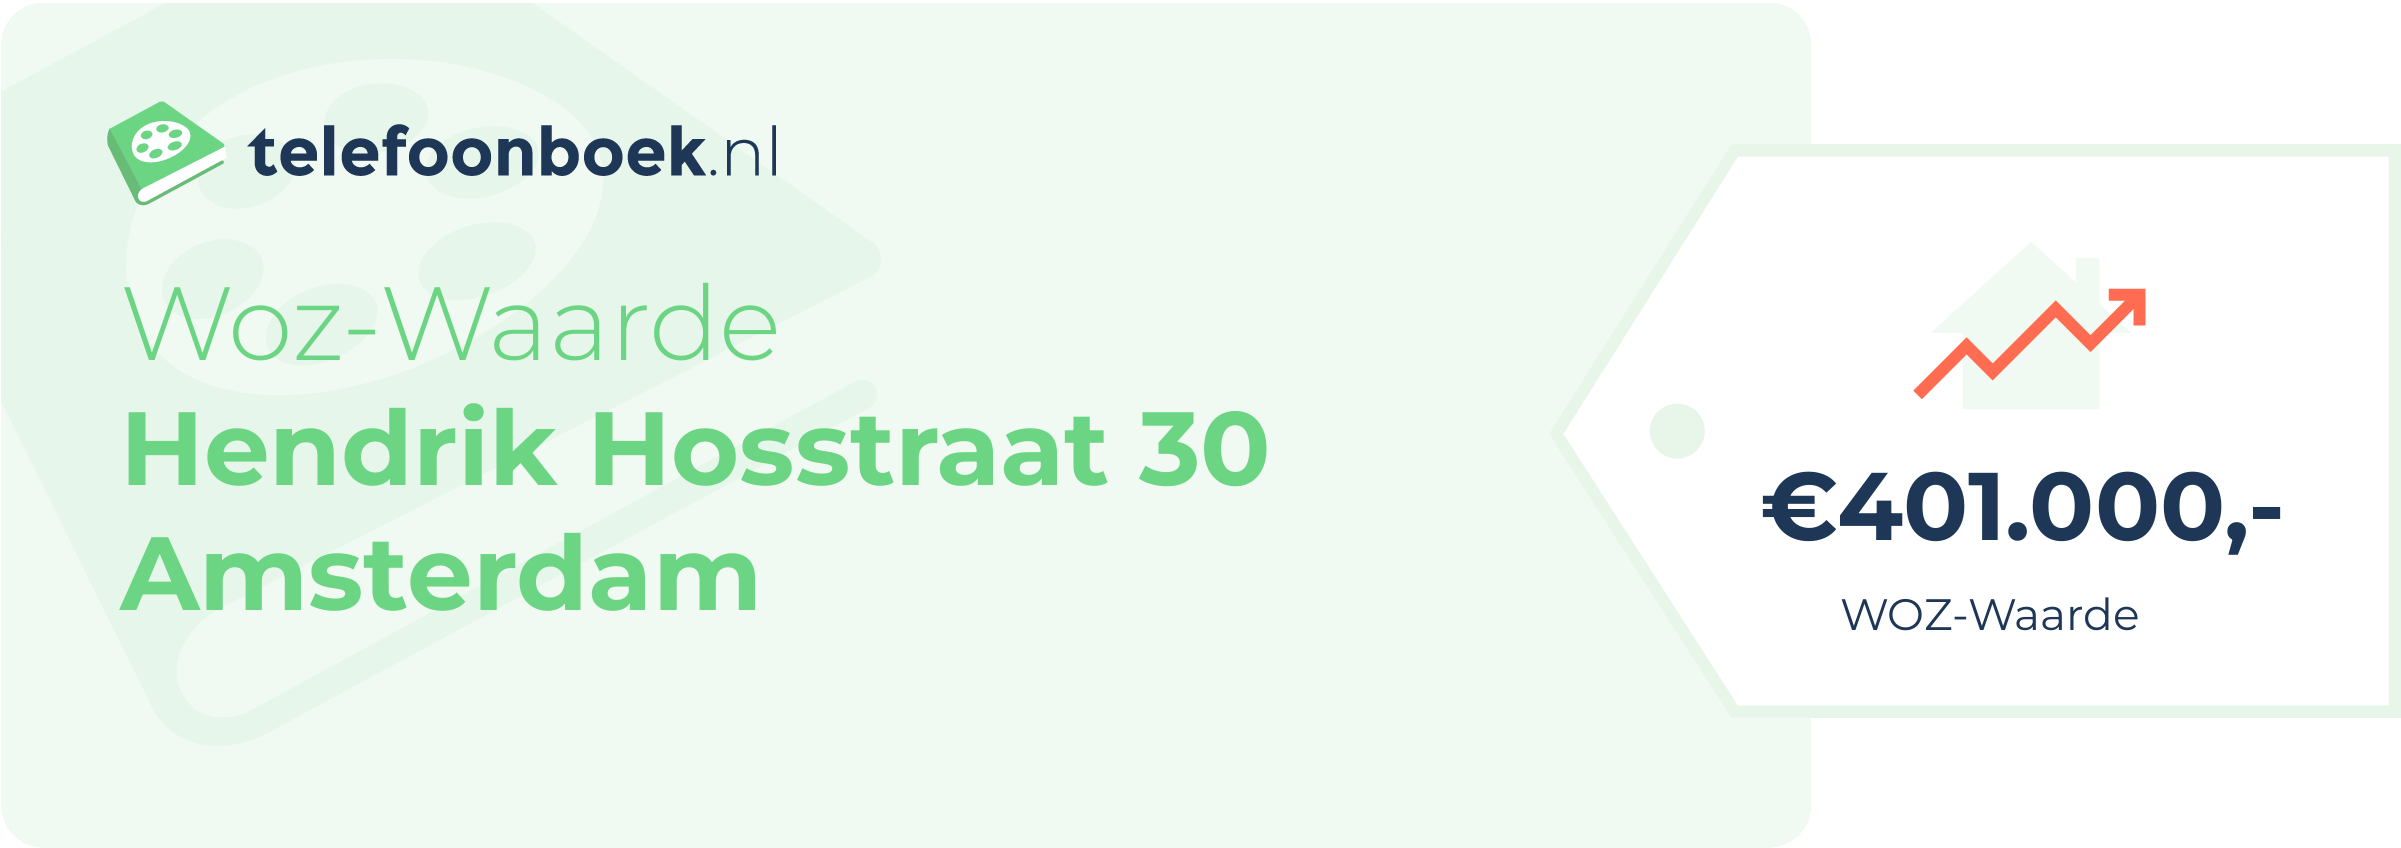 WOZ-waarde Hendrik Hosstraat 30 Amsterdam